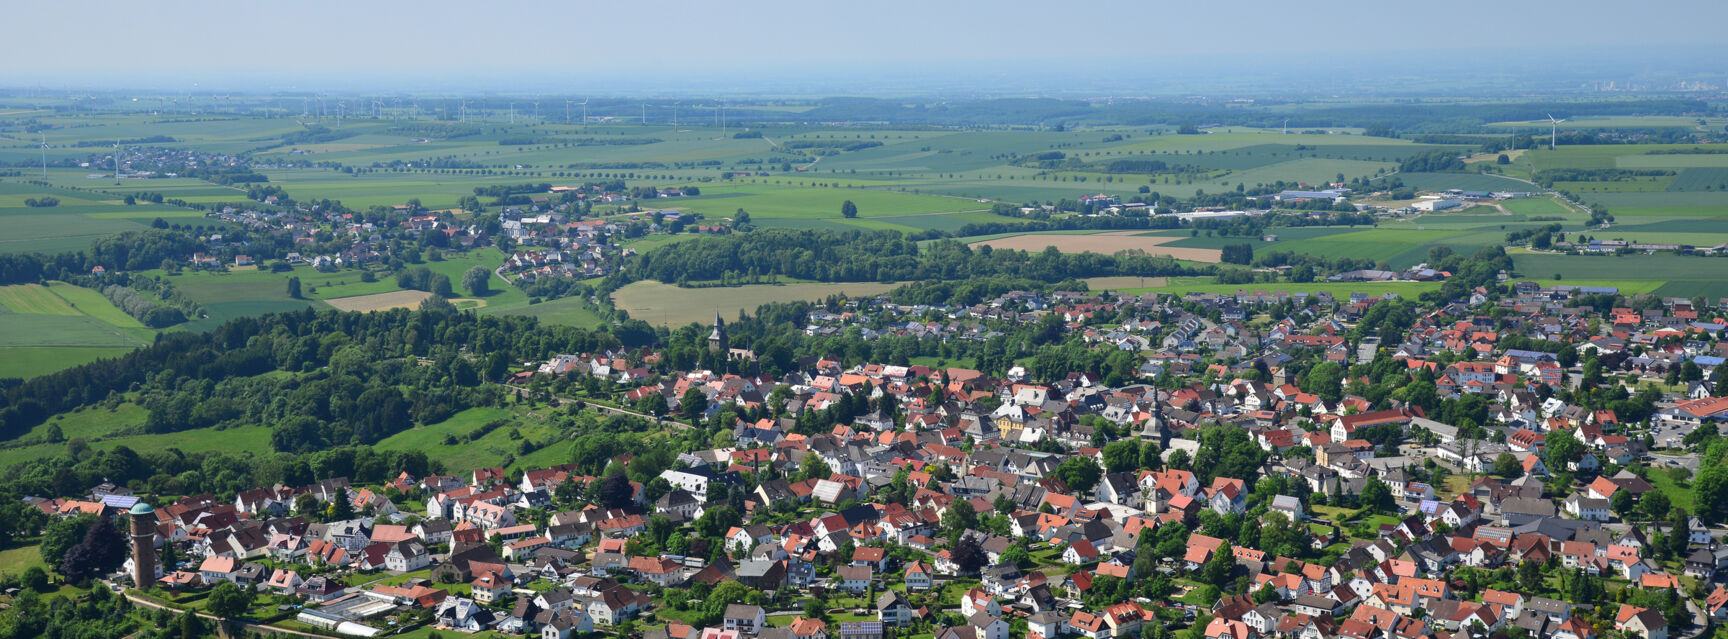 Startbild Rüthen Luftbild mit Wasserturm © Zoomfaktor